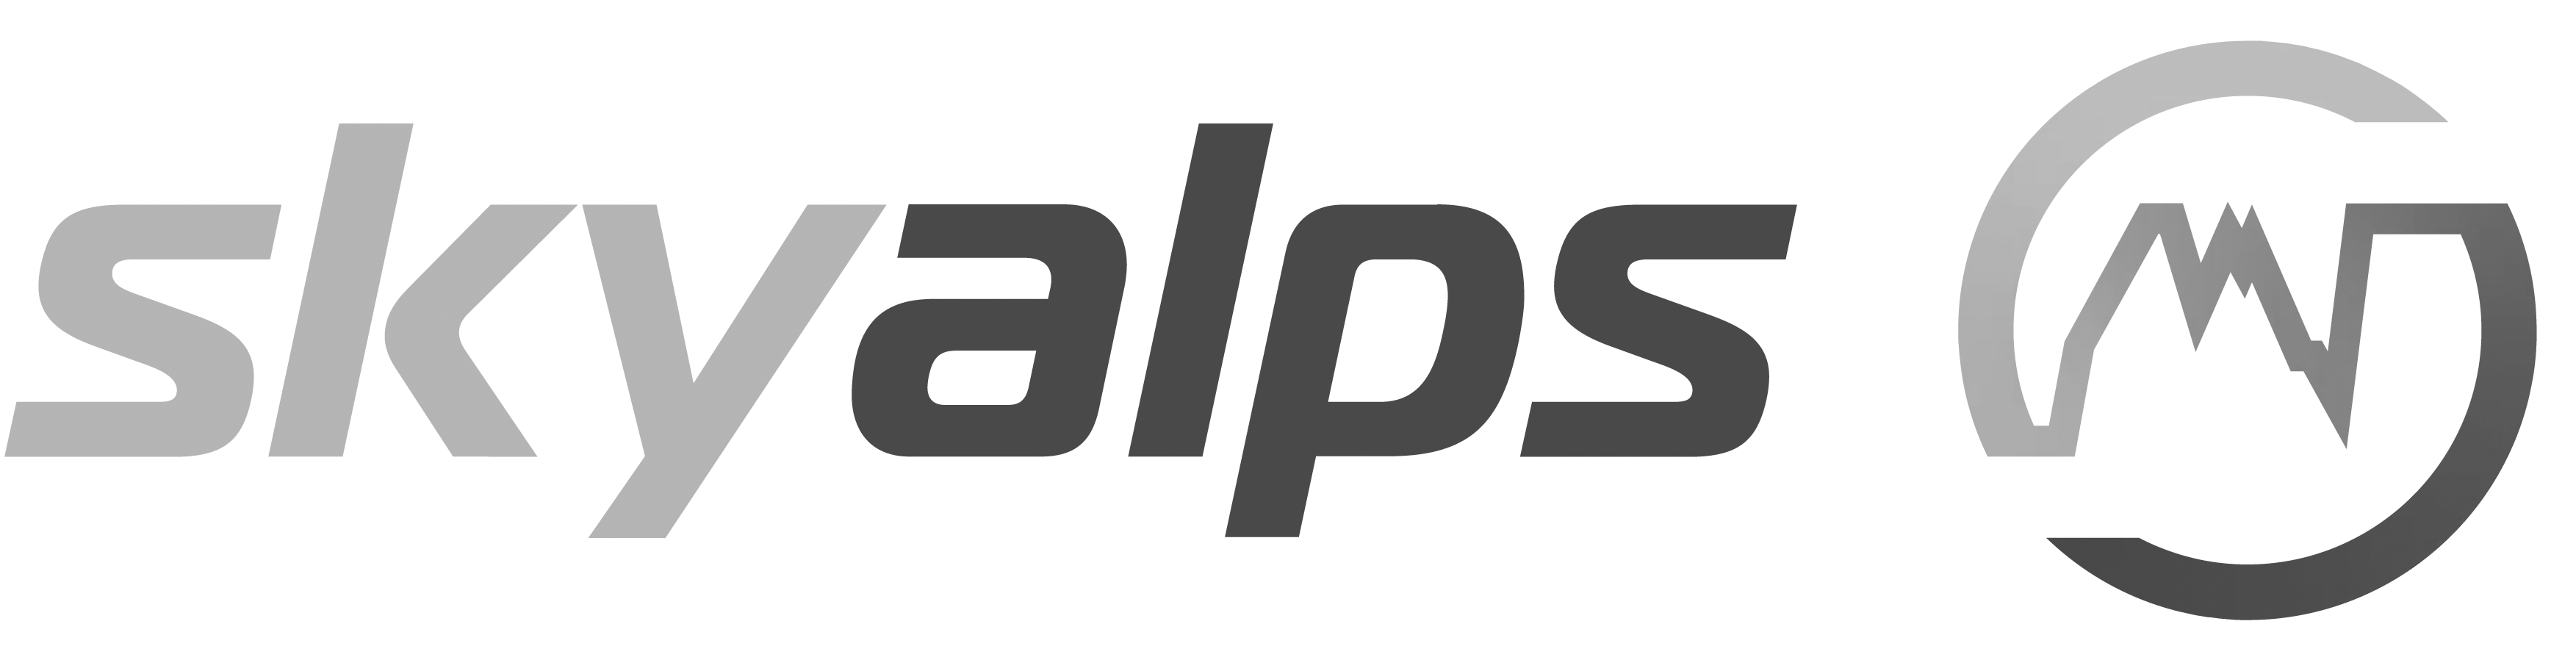 Sky Alps Logo (Schwarz/Weiß)